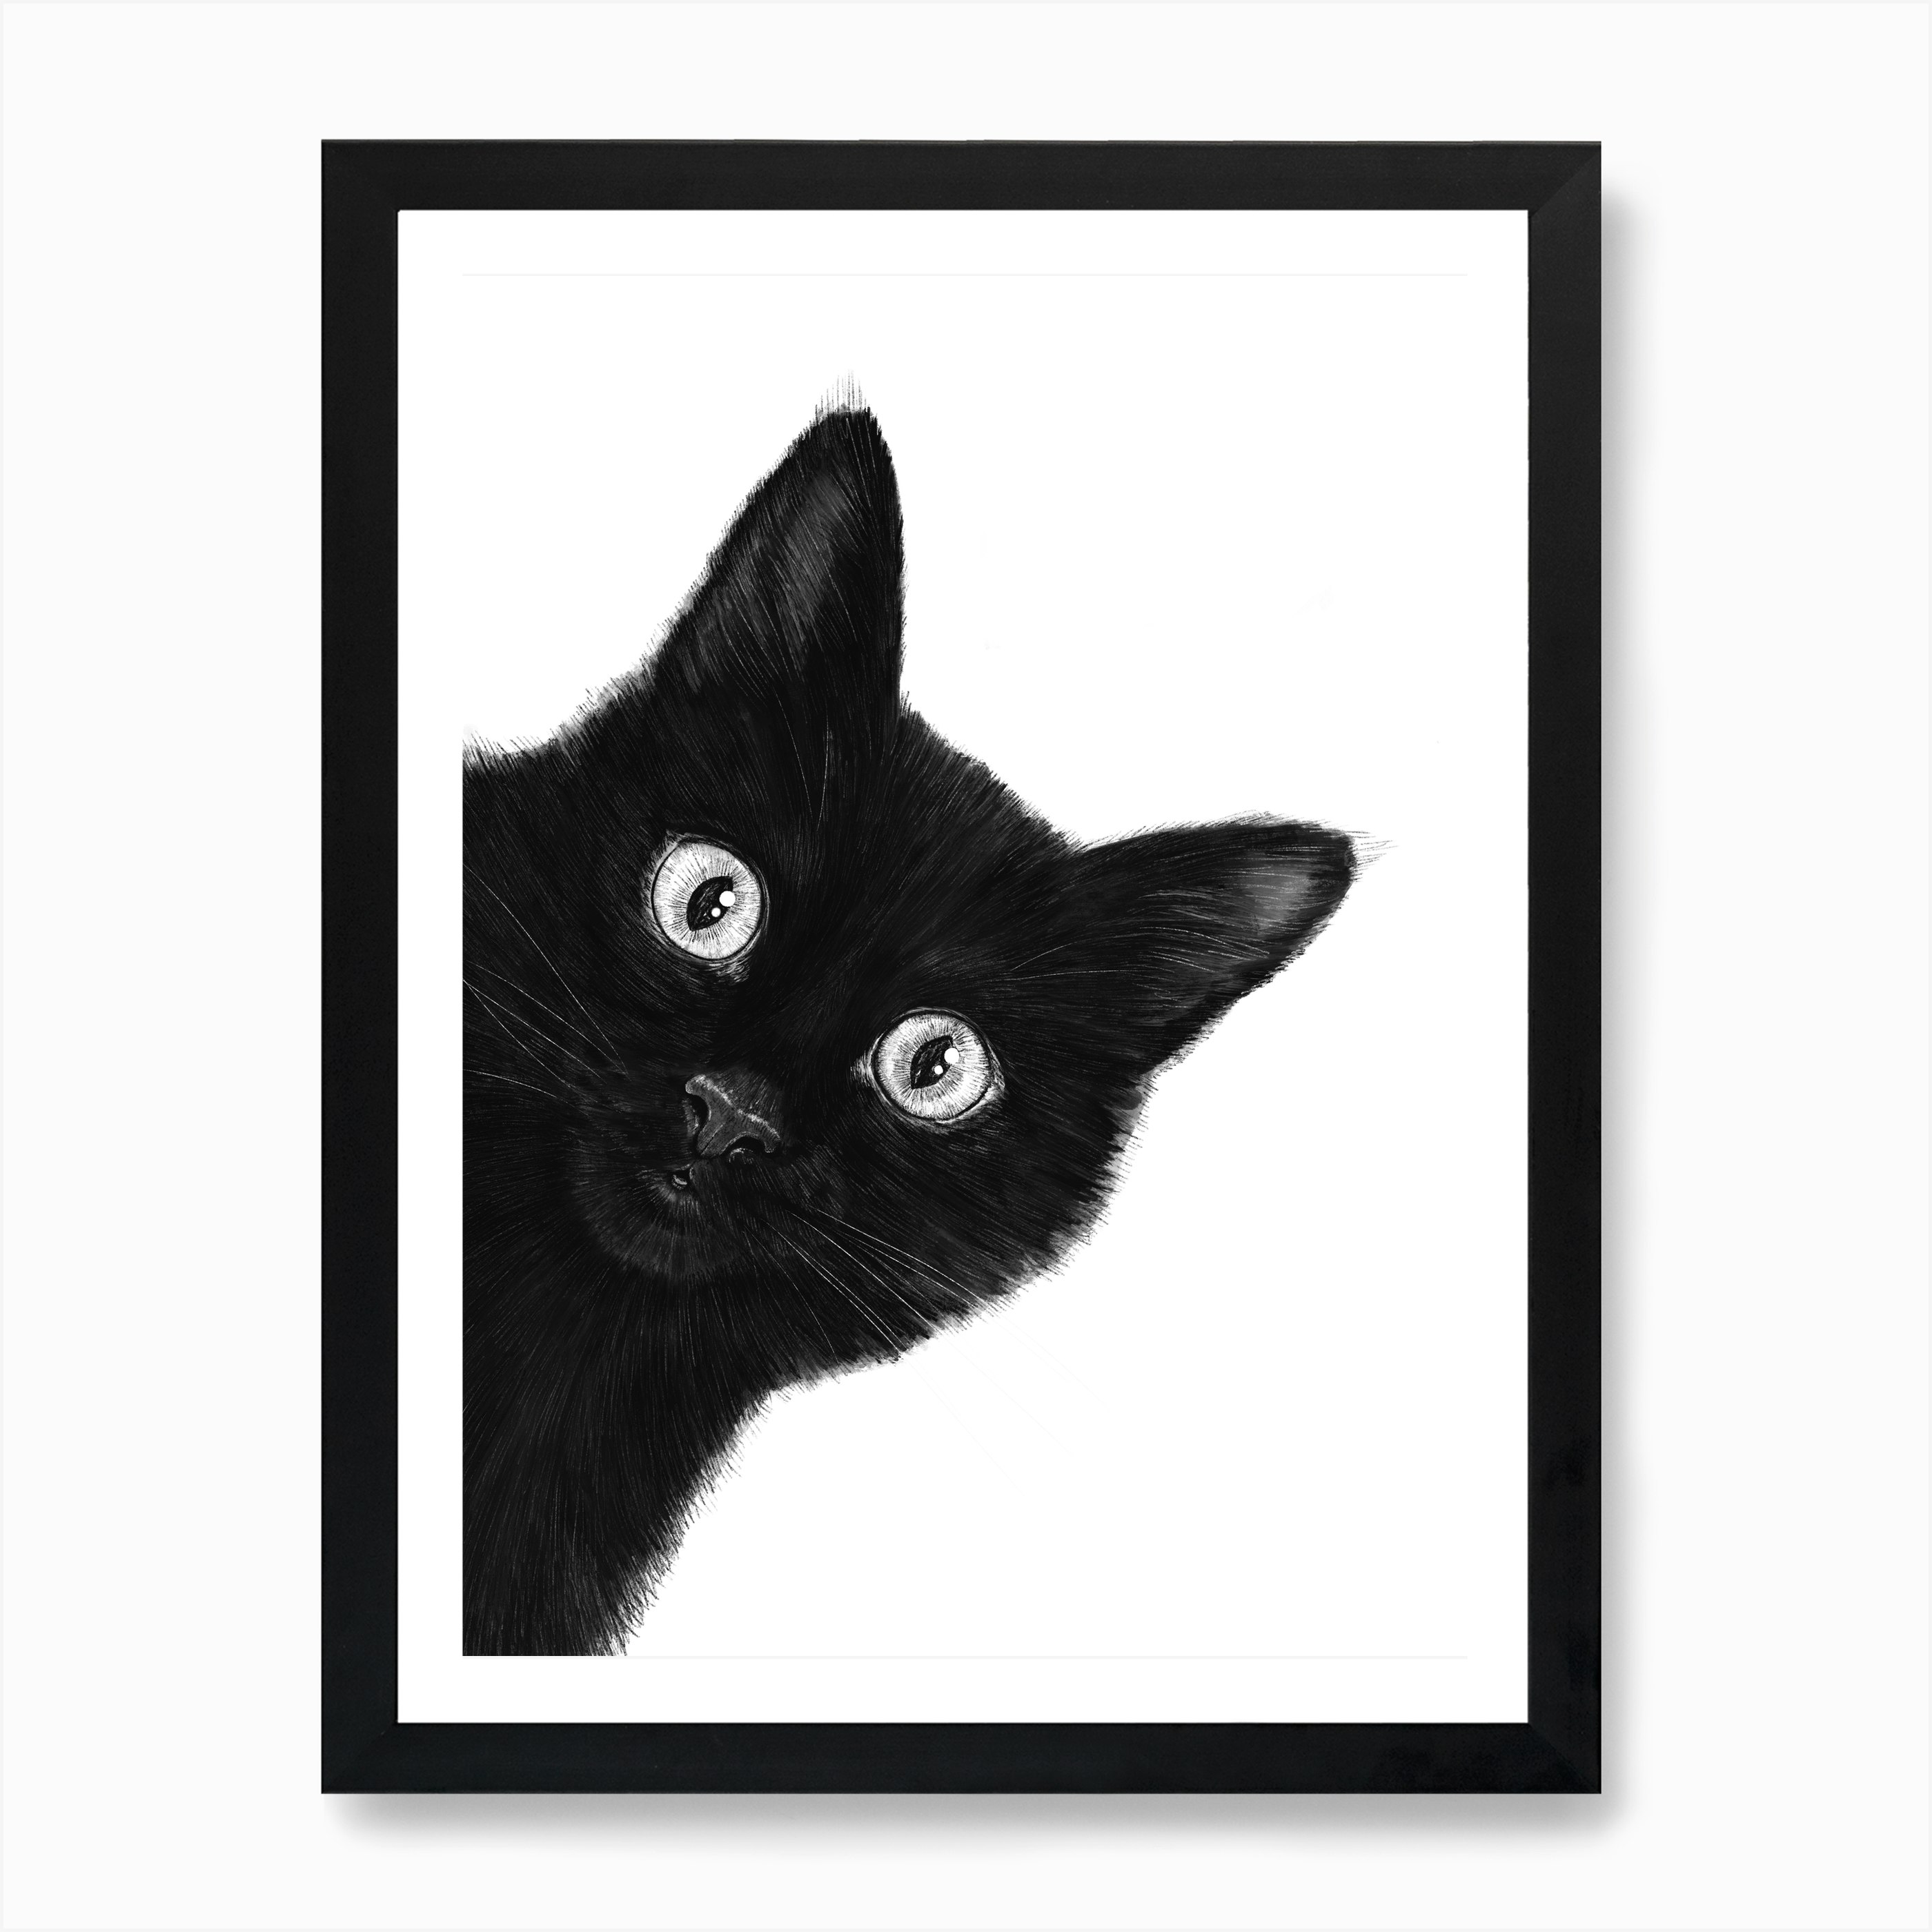  Black  Cat  Art Print by Valeriya Korenkova Fy